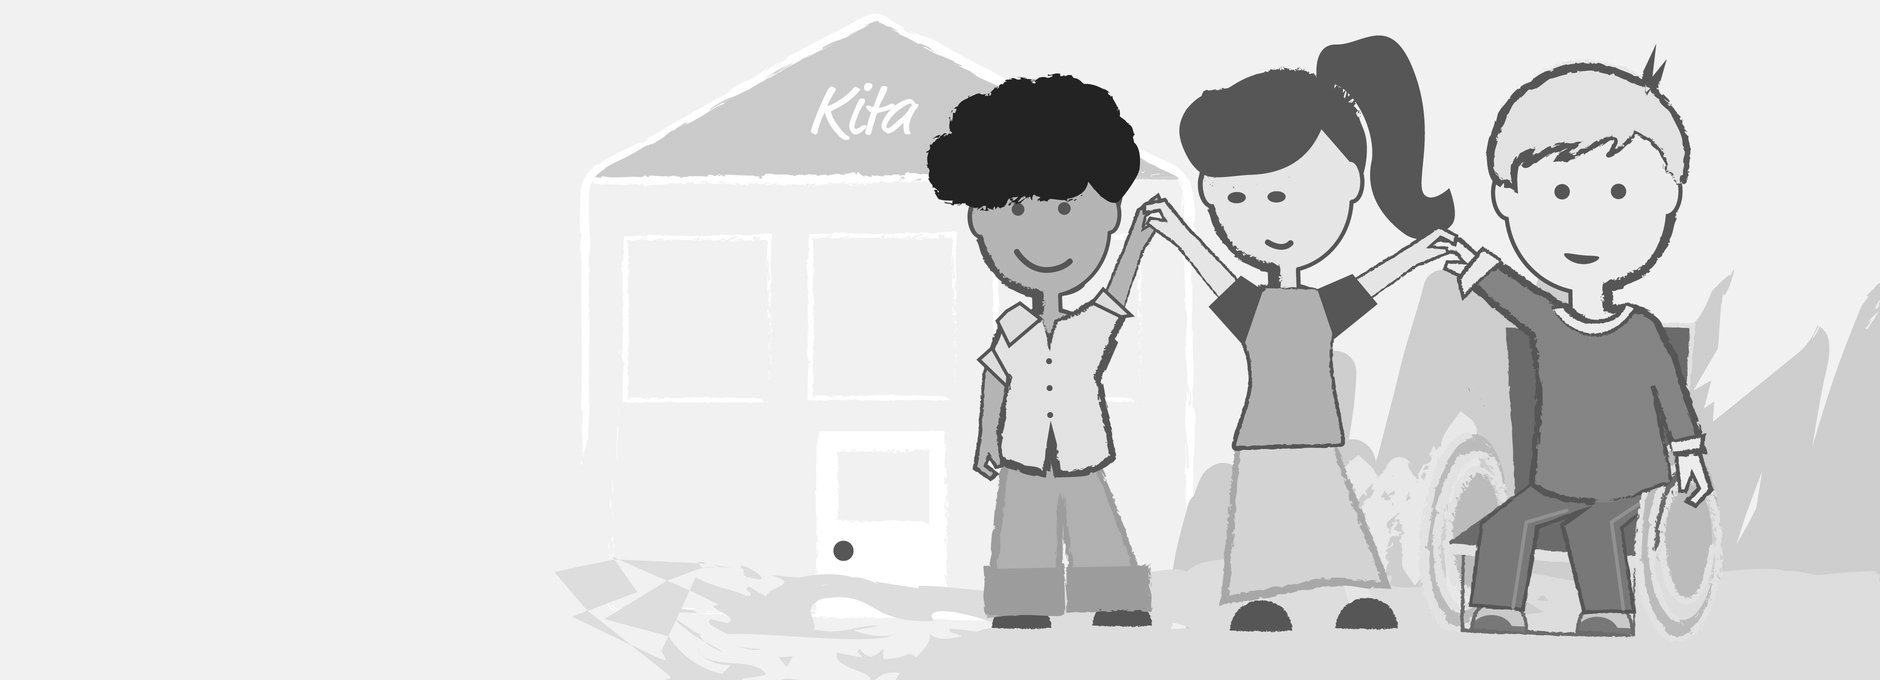 Das Bild zeigt drei Personen, die sich alle an der Hand fassen. Sie befinden vor einem Haus mit der Aufschrift Kita. Eine der Personen sitzt im Rollstuhl